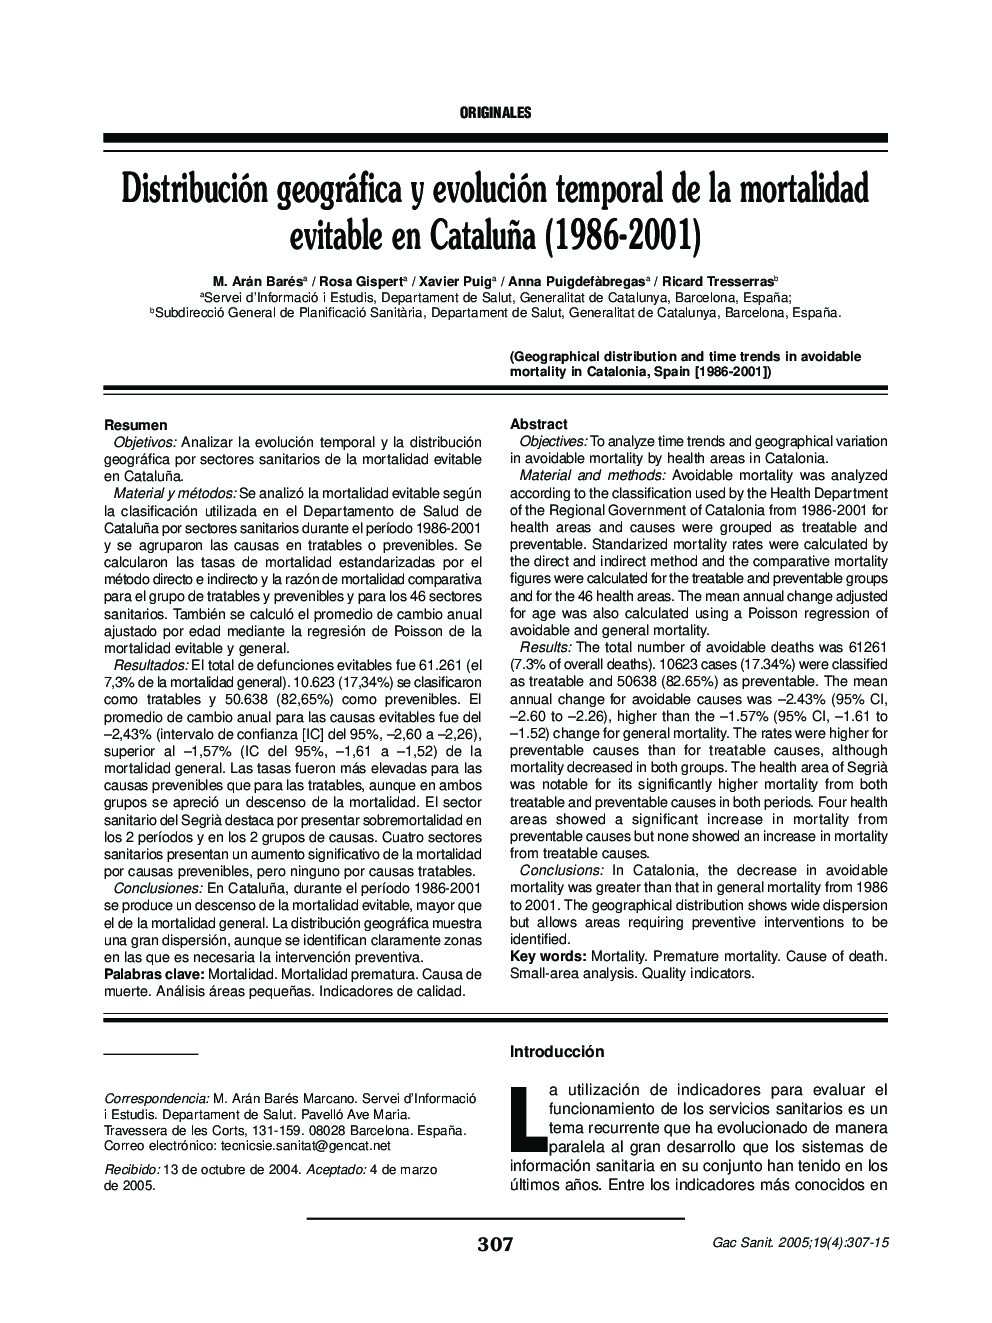 Distribución geográfica y evolución temporal de la mortalidad evitable en Cataluña (1986-2001)